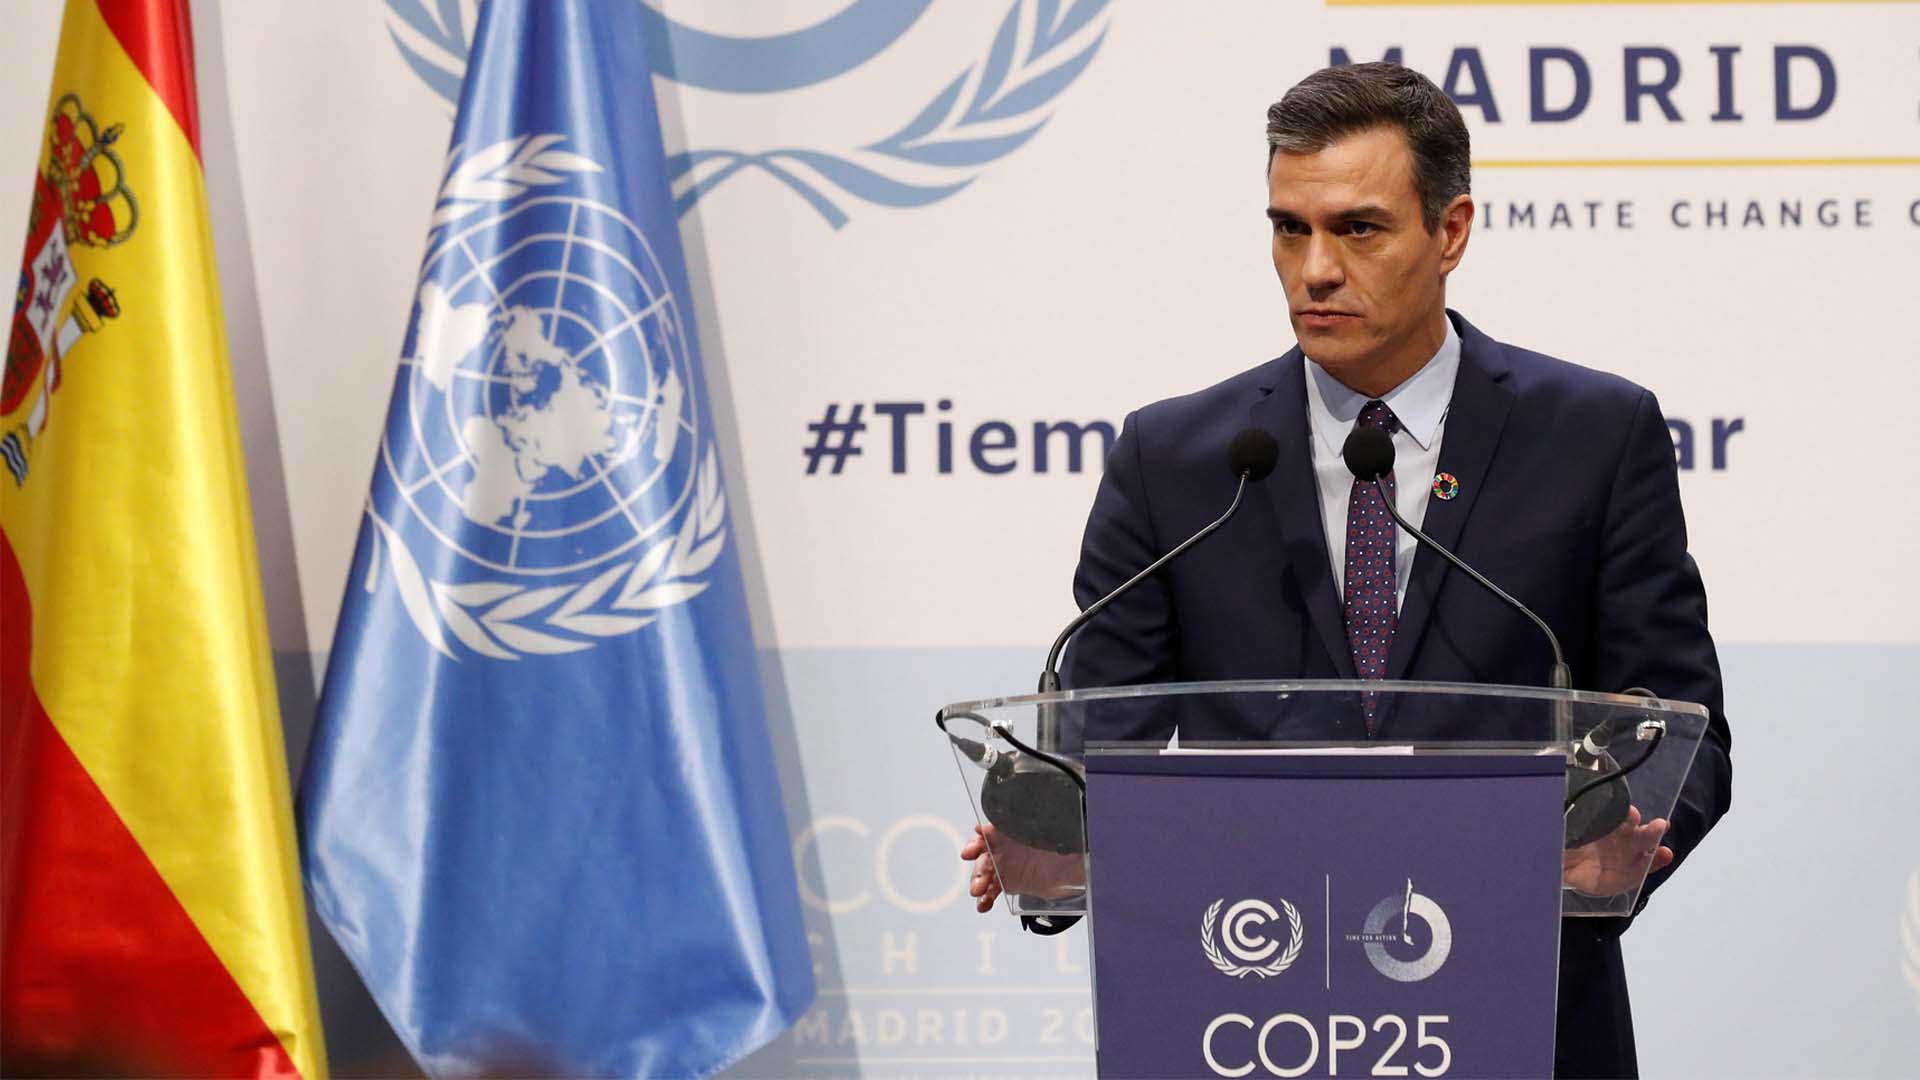 Pedro Sánchez se compromete a reducir las emisiones más de lo que pide la UE